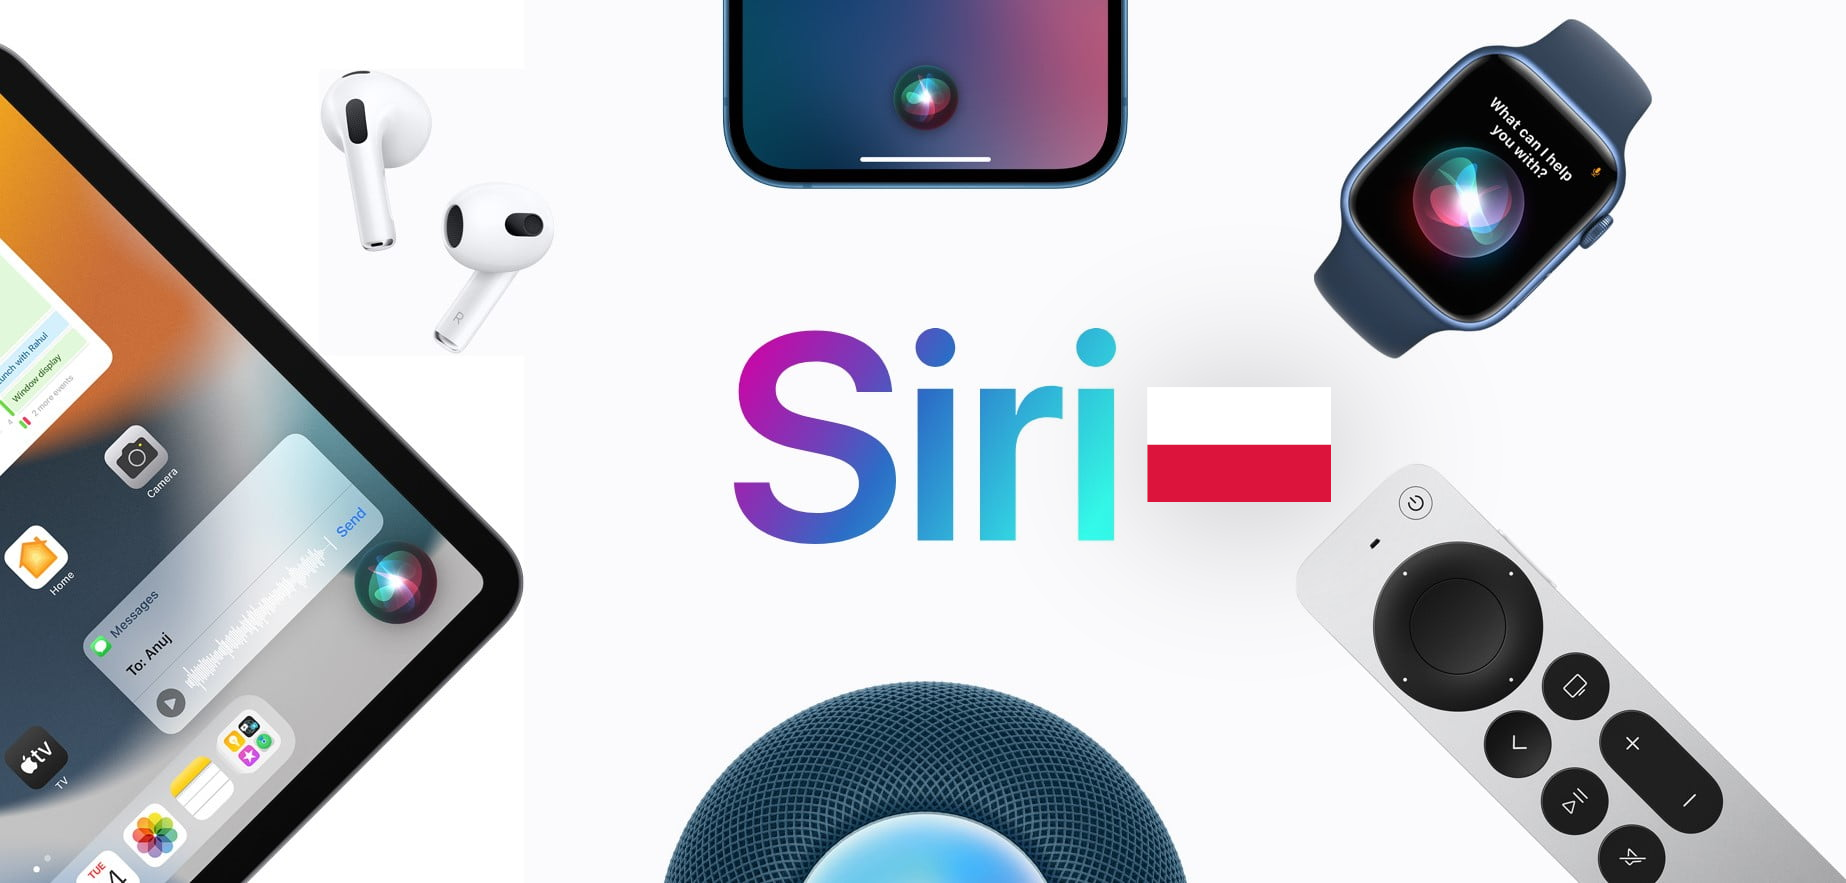 Siri po polsku. Kolaż różnych produktów Apple z asystentem głosowym Siri: słuchawki AirPods, iPhone, iPad, głośnik HomePod, Apple Watch i pilot do Apple TV, z logo Siri na środku.